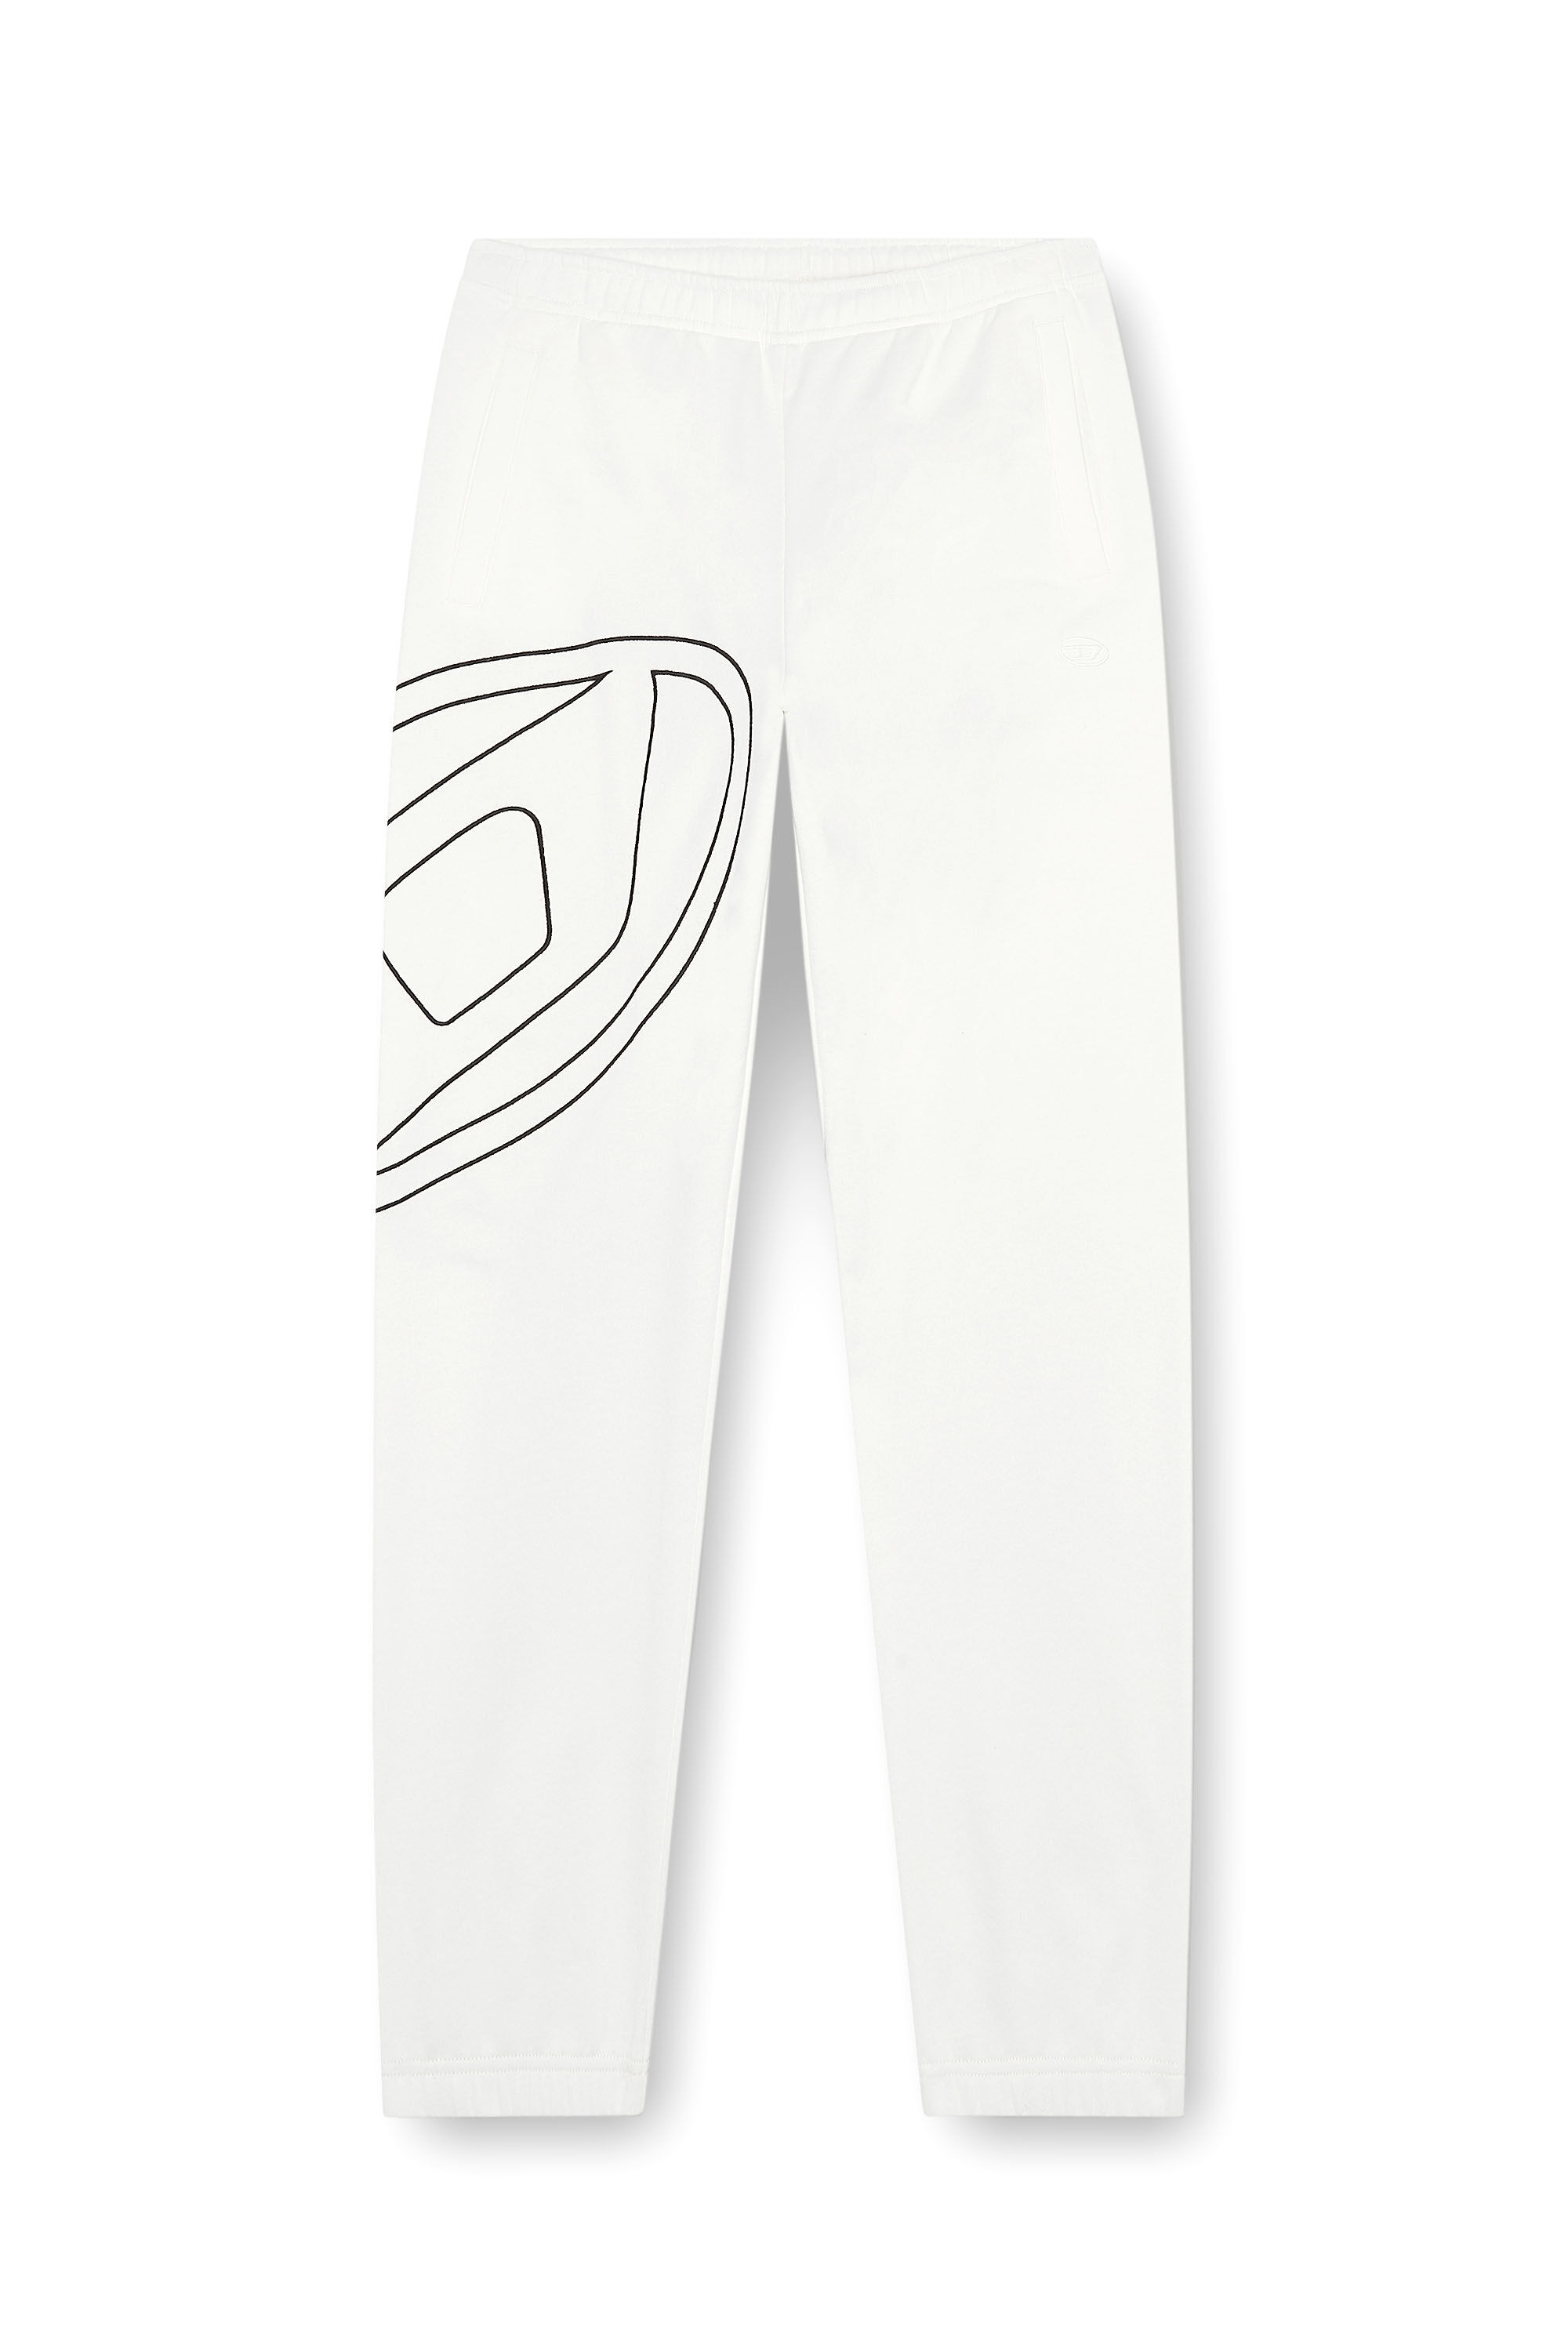 Diesel - P-MARKY-MEGOVAL-D, Homme Pantalon de survêtement avec méga oval D in Blanc - Image 2